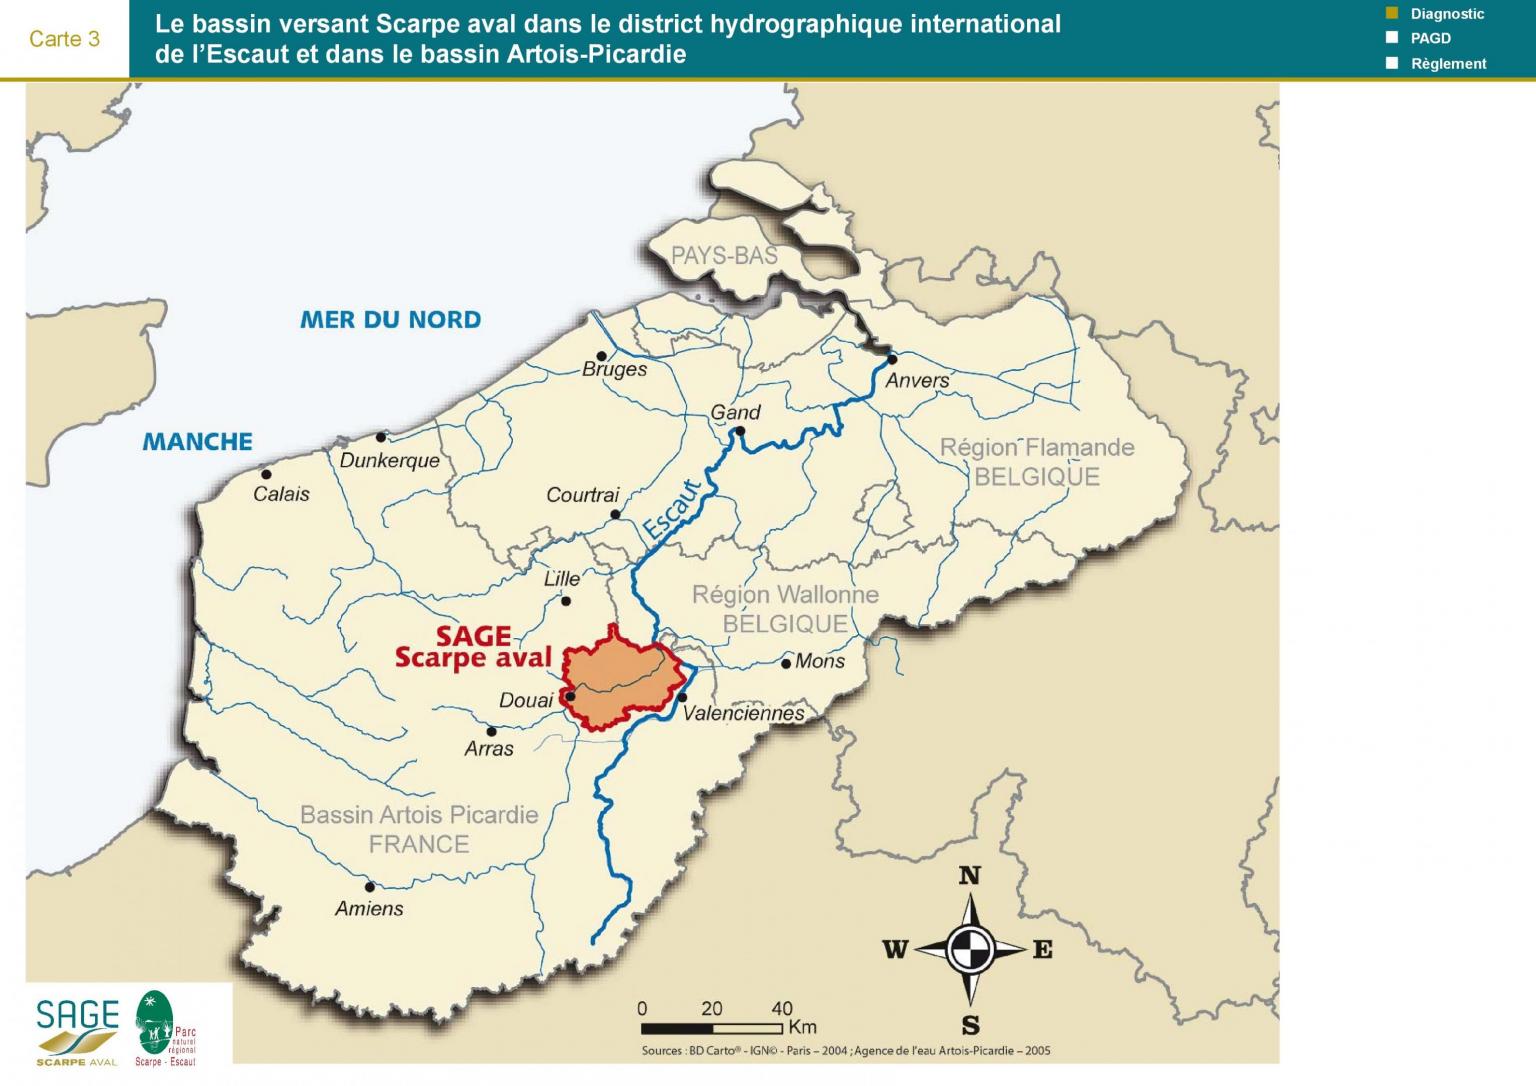 Etat des lieux - Carte 3 : Le bassin versant Scarpe aval dans le district hydrographique international 